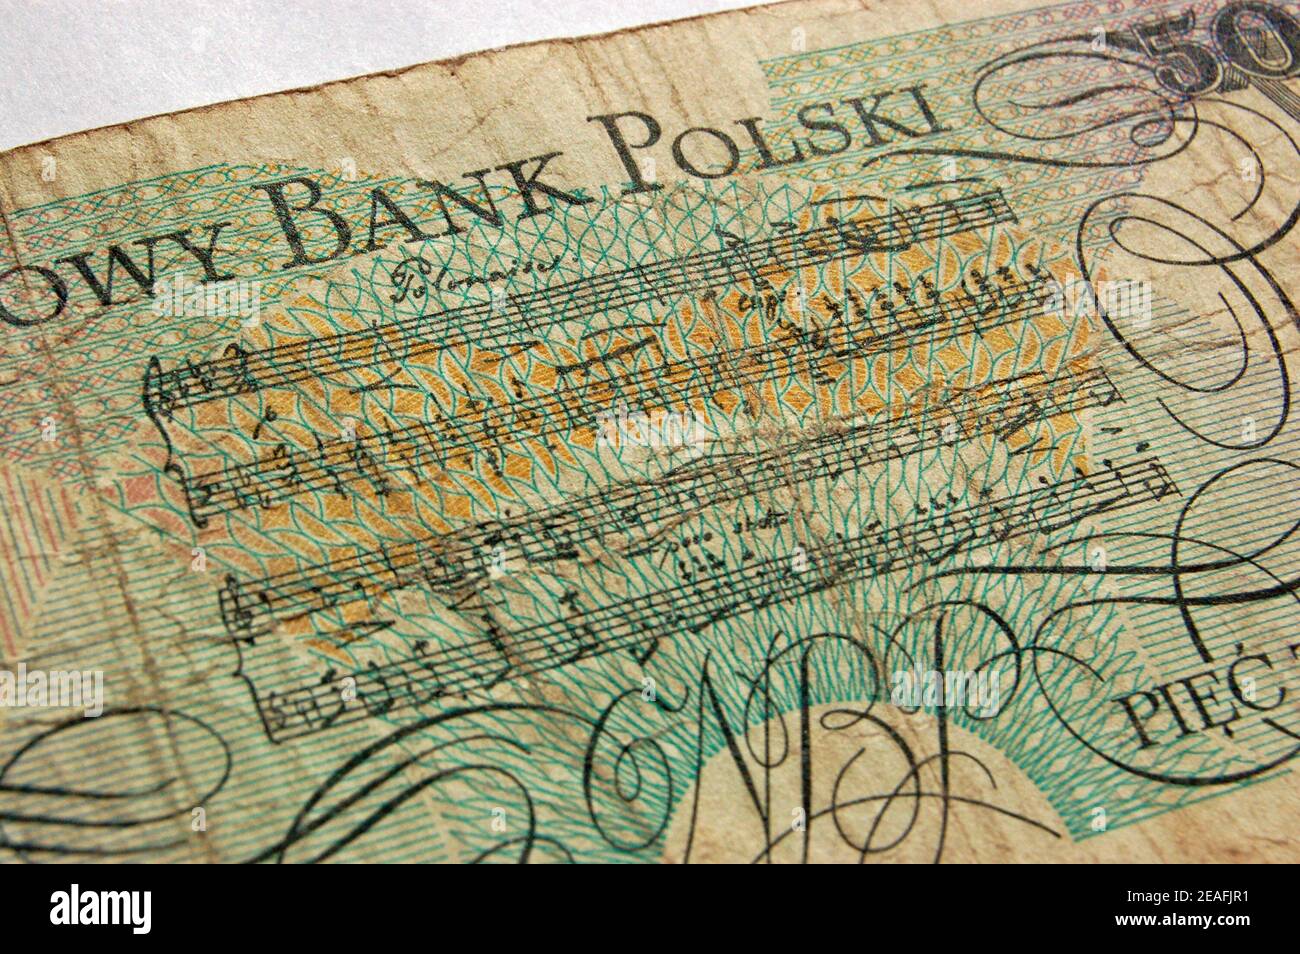 Un Polonaise Chopin riprodotto su una banconota da zloty polacca. Foto Stock